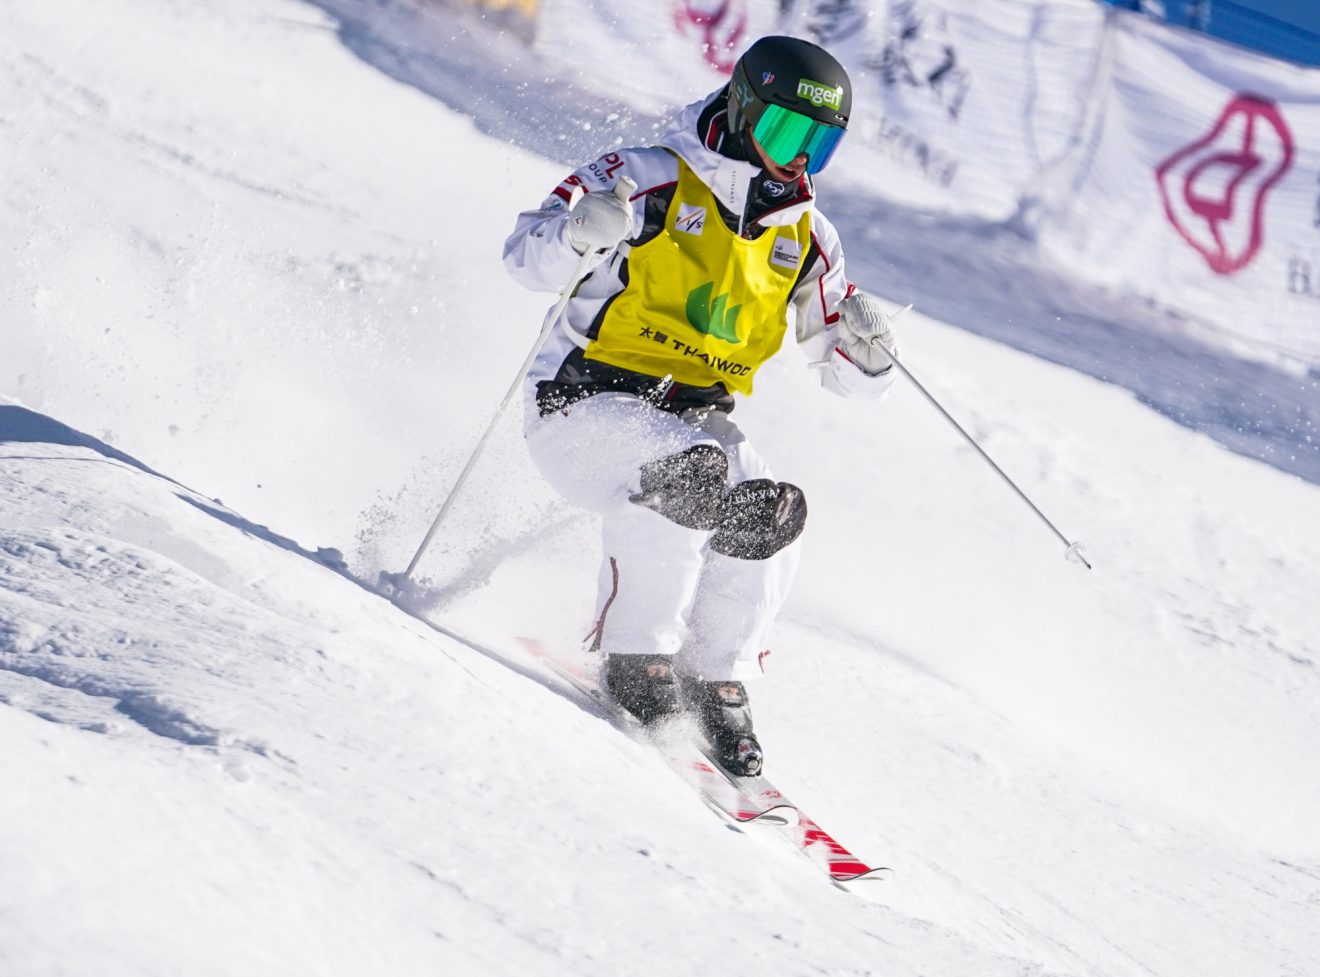 La skieuse acrobatique française Perrine Laffont a remporté la première étape de la Coupe du monde de ski de bosses 2020-2021 samedi à Ruka.